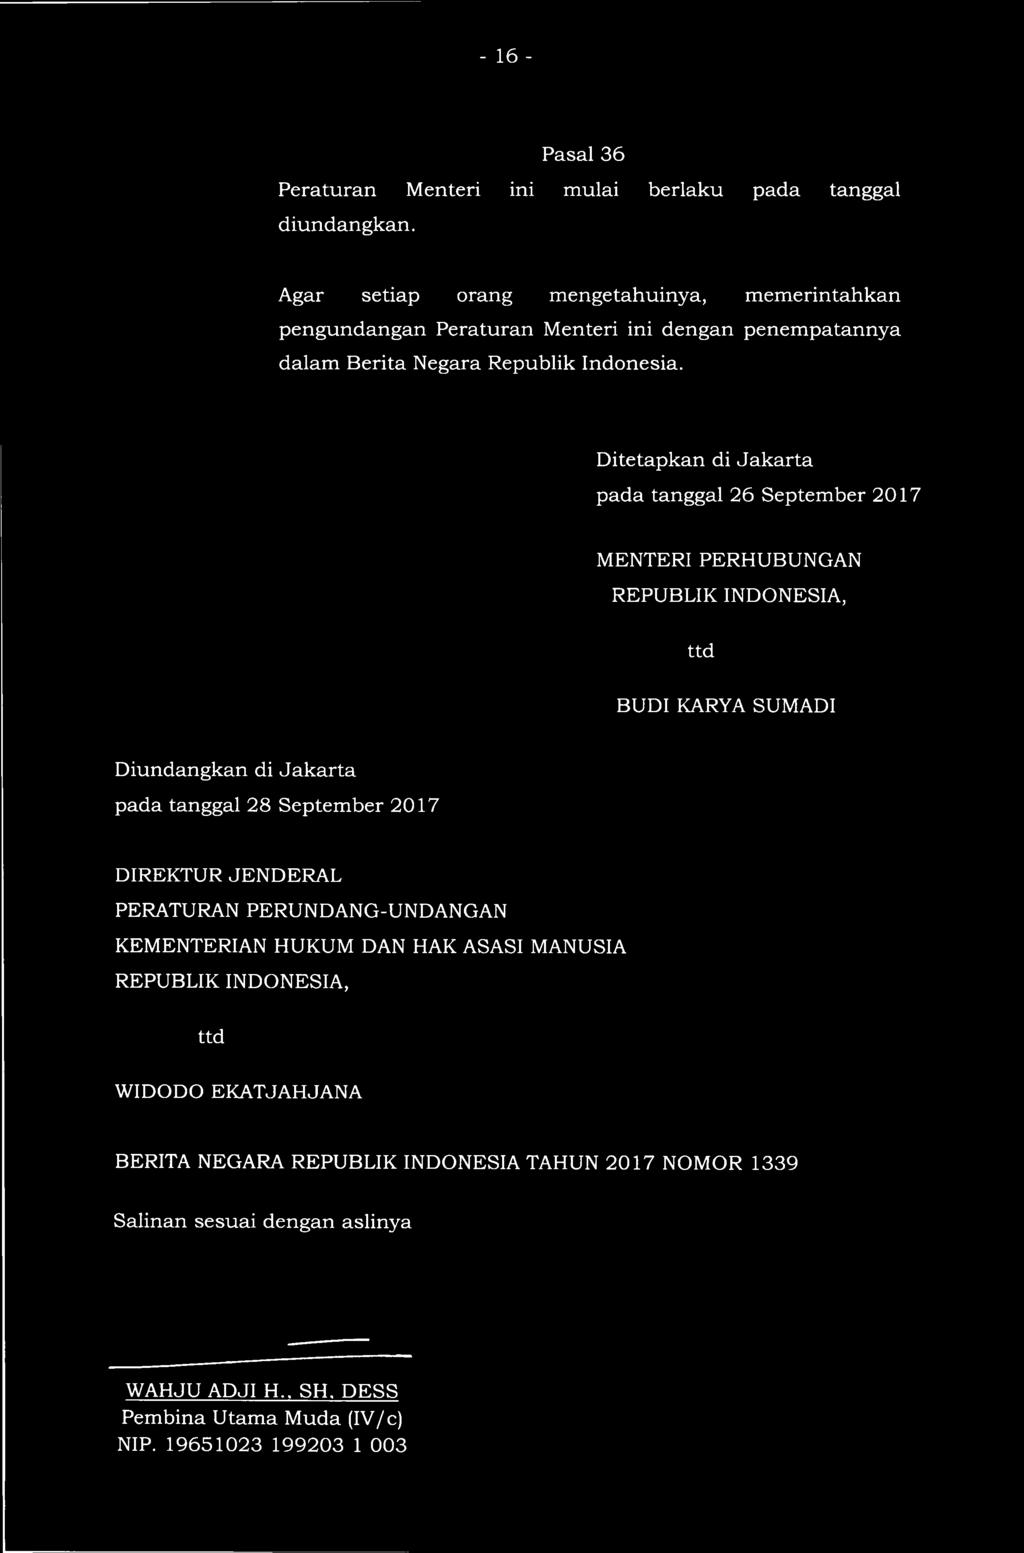 Ditetapkan di Jakarta pada tanggal 26 September 2017 MENTERI PERHUBUNGAN REPUBLIK INDONESIA, ttd BUDI KARYA SUMADI Diundangkan di Jakarta pada tanggal 28 September 2017